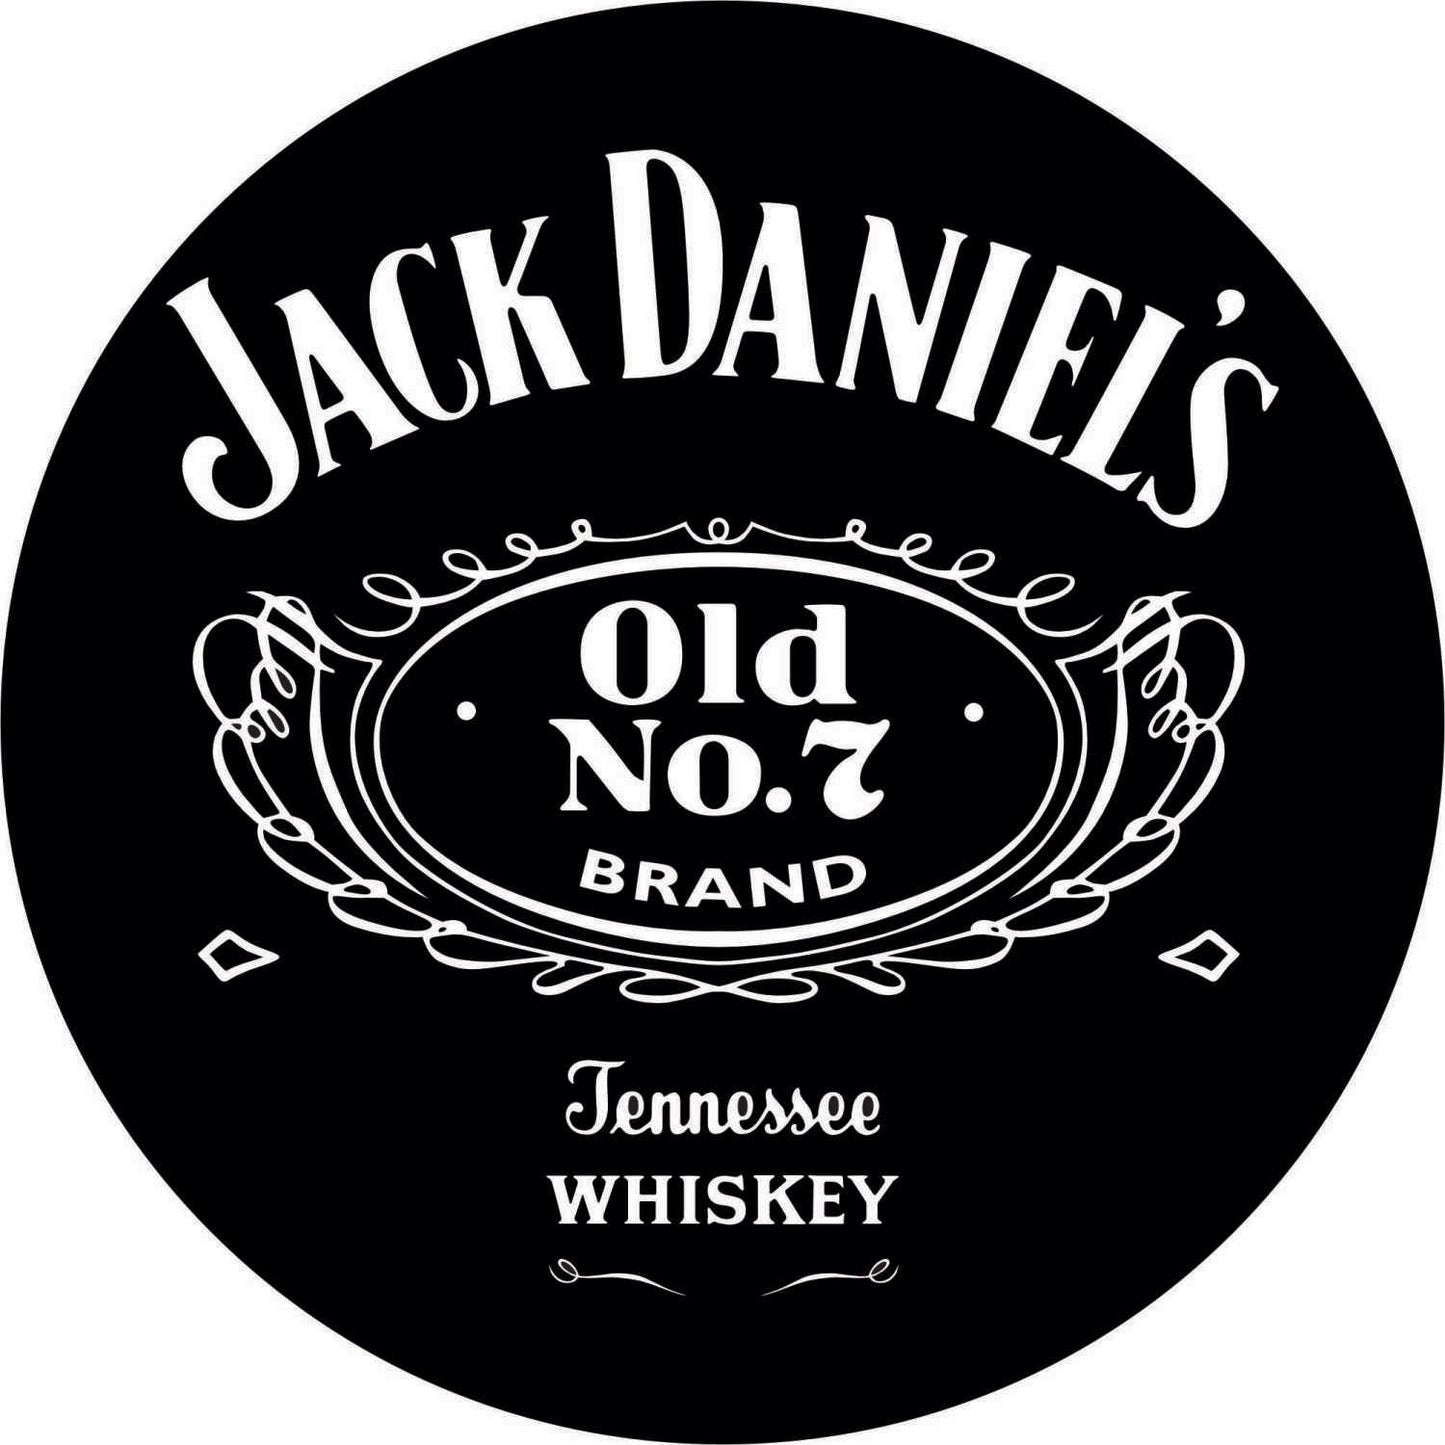 007-Single-sided illuminated sign - Jack Daniel's